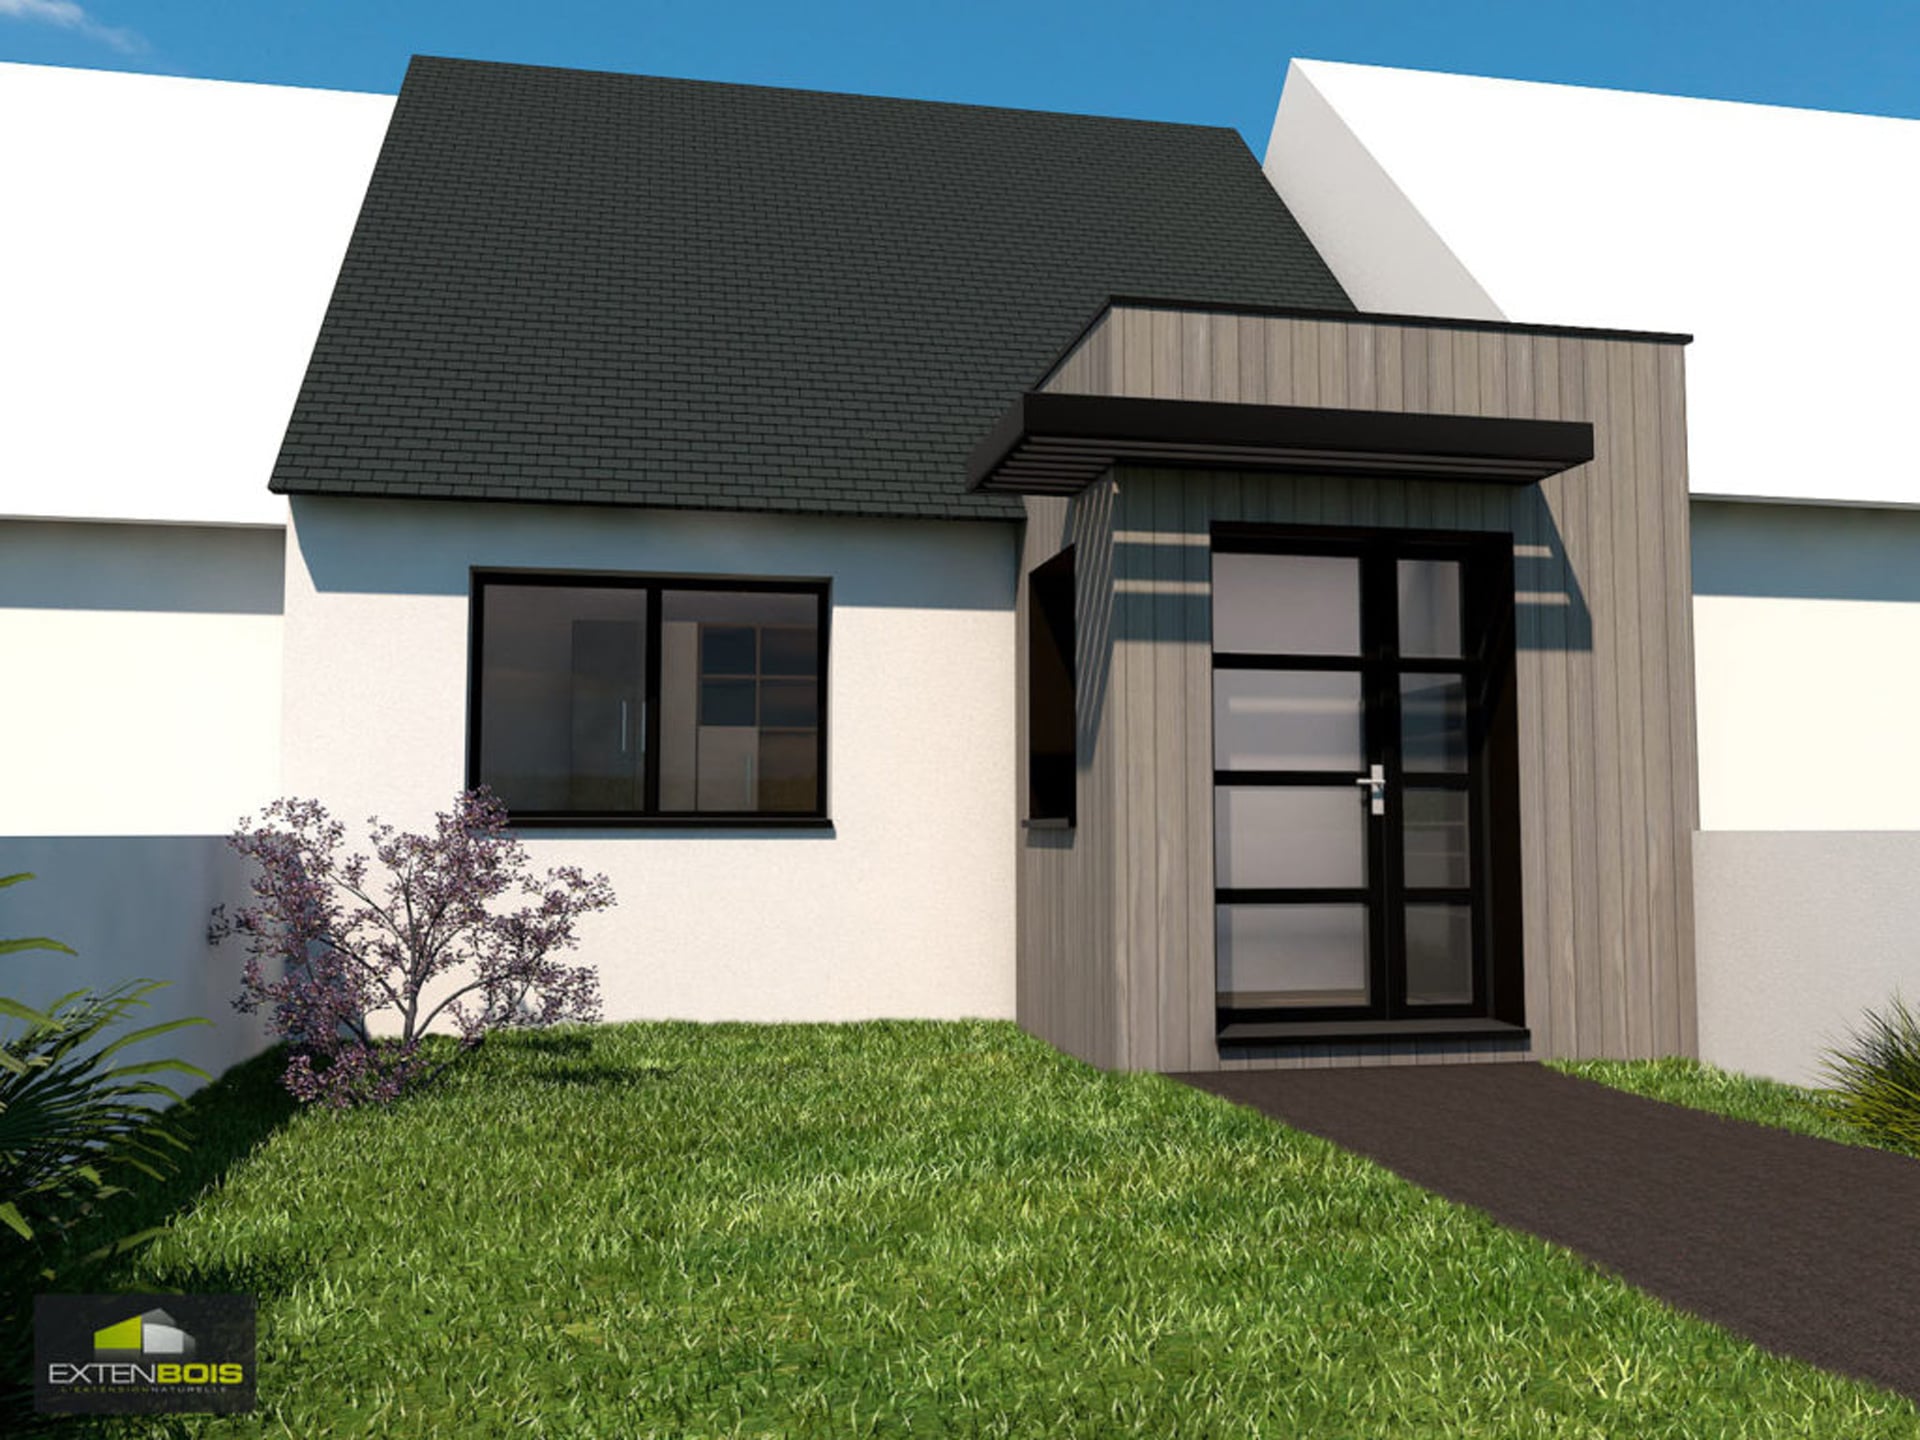 Extension bois à Fouesnant (29) : agrandir une maison secondaire